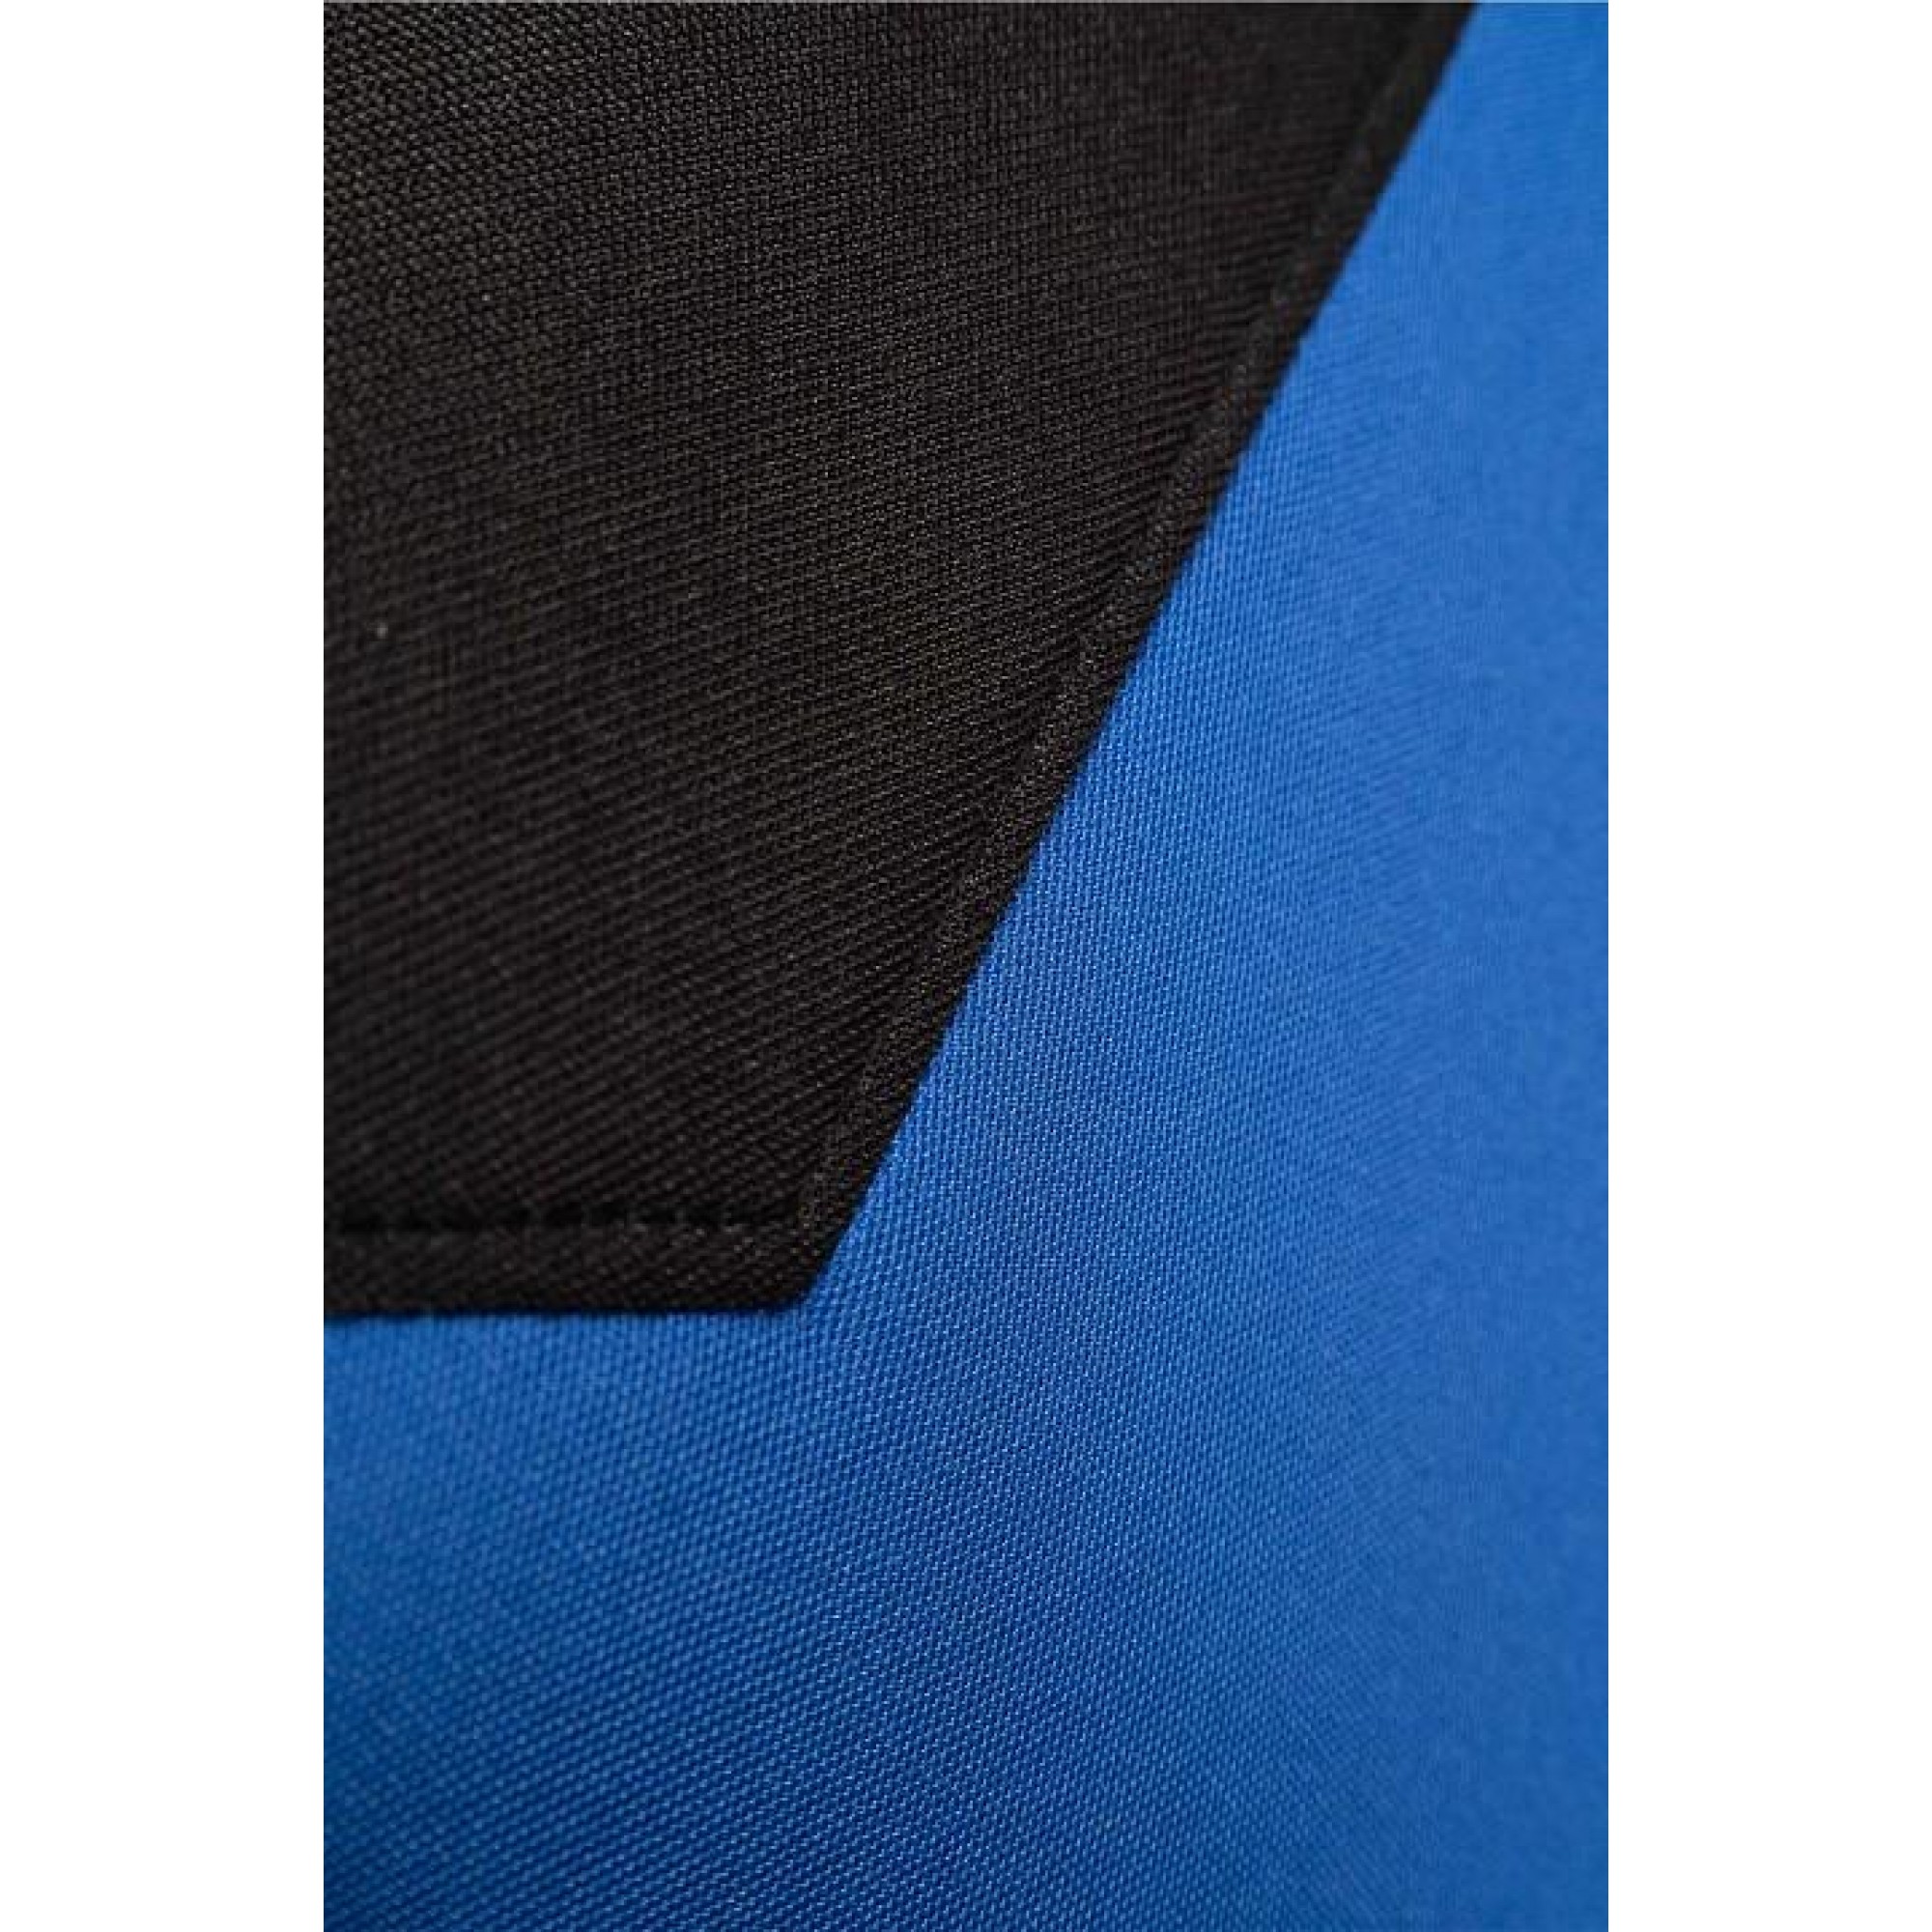 Кресло игровое BX-3760 синий 700x700x1260-1360(RC_BX-3760_Black-Blue)